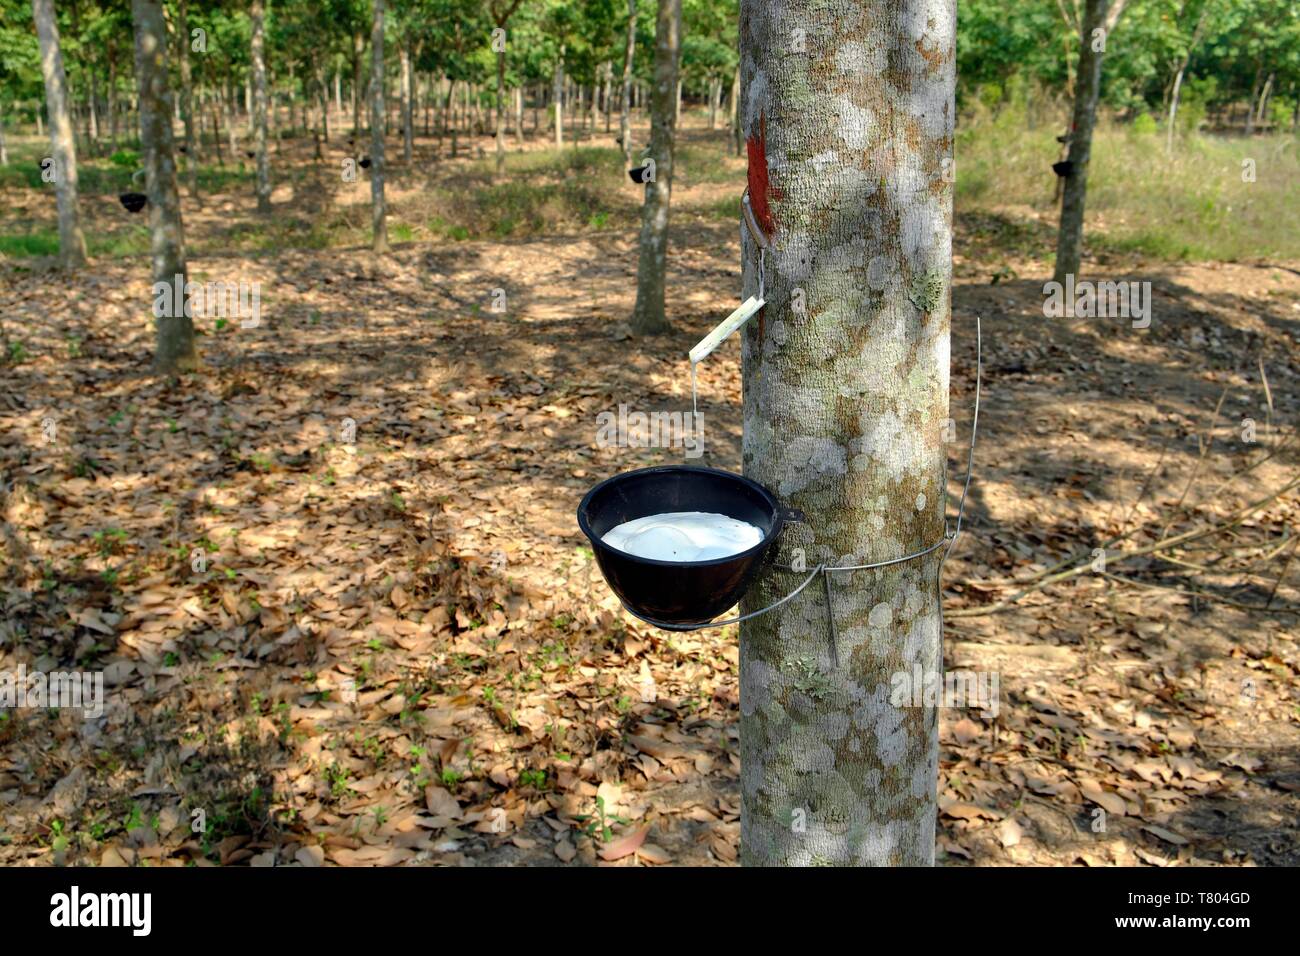 La production de caoutchouc, le caoutchouc s'égoutte dans un récipient, avec plantation d'arbres de caoutchouc (Hevea brasiliensis), Kanchanaburi, Thaïlande Banque D'Images